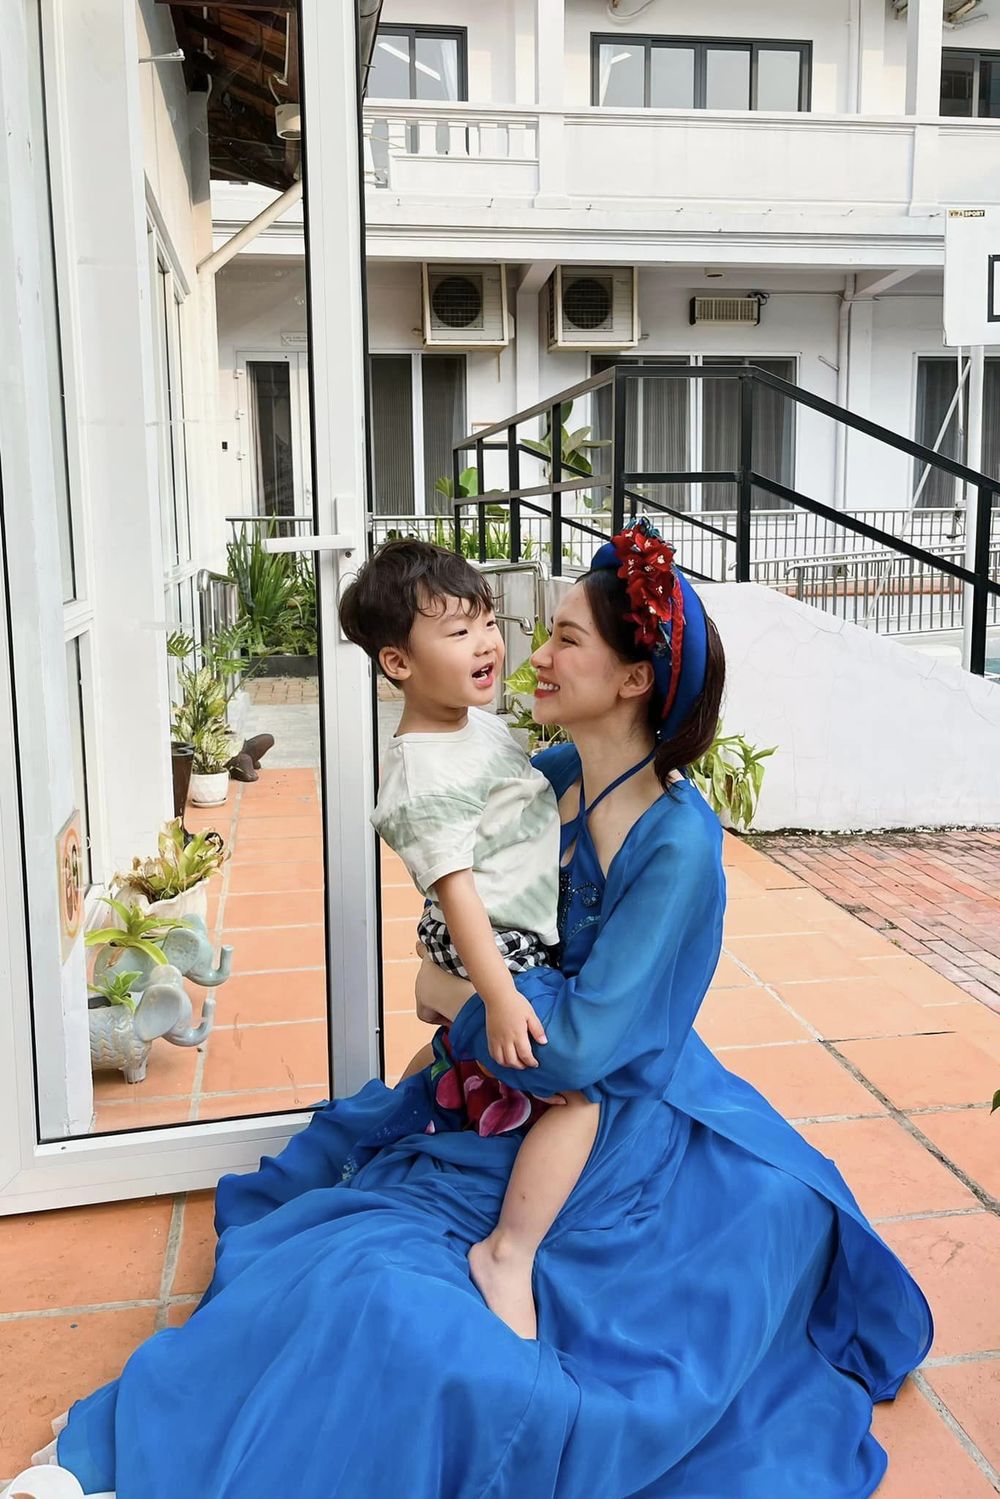  Hòa Minzy trở thành mẹ đơn thân nhưng lúc nào cũng đầy hạnh phúc bên quý tử. (Ảnh: FB Hòa Minzy)